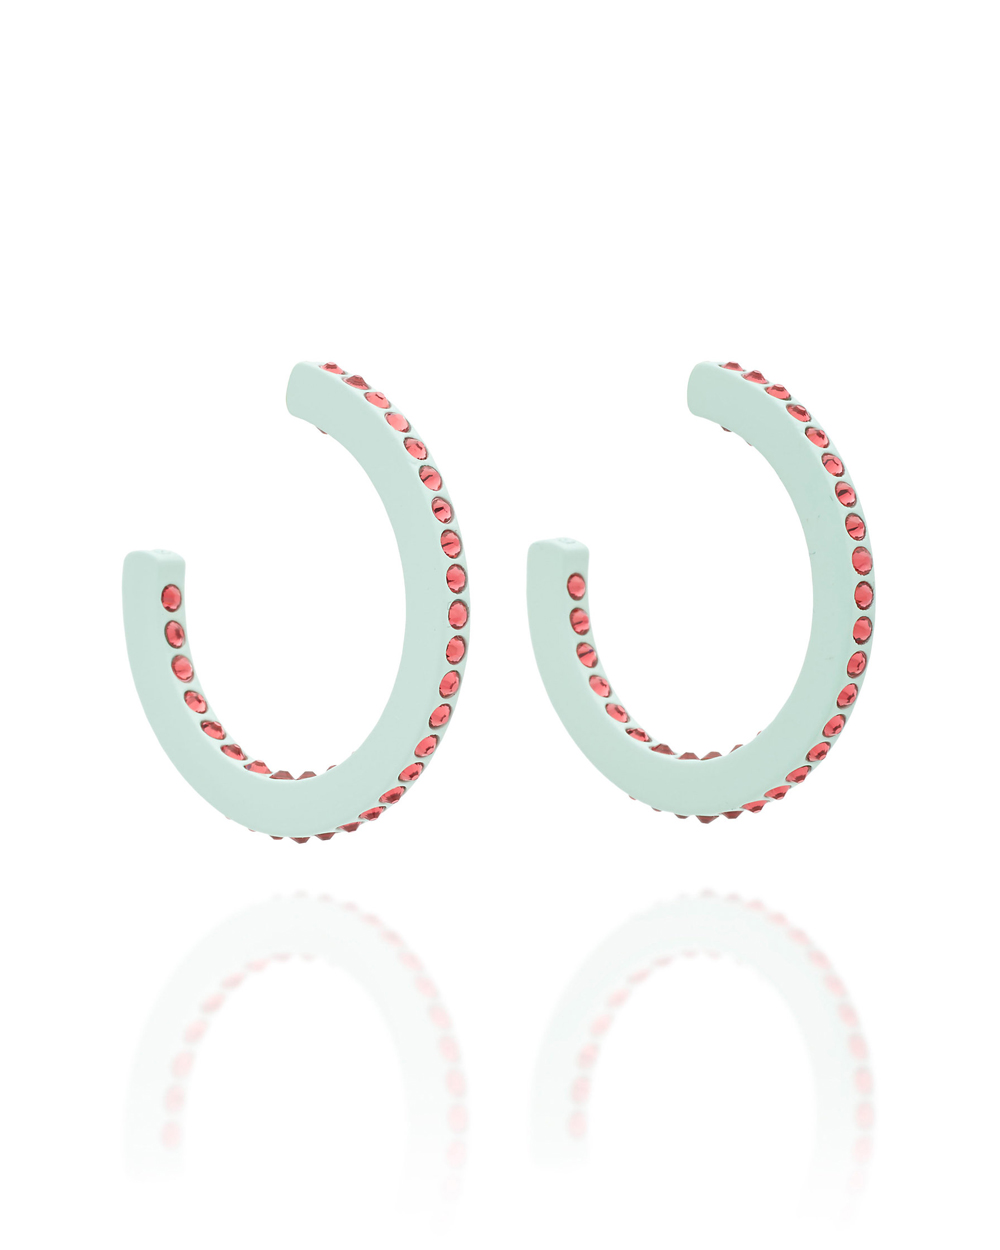 Roxanne Assoulin earrings, $110 USD from Moda Operandi